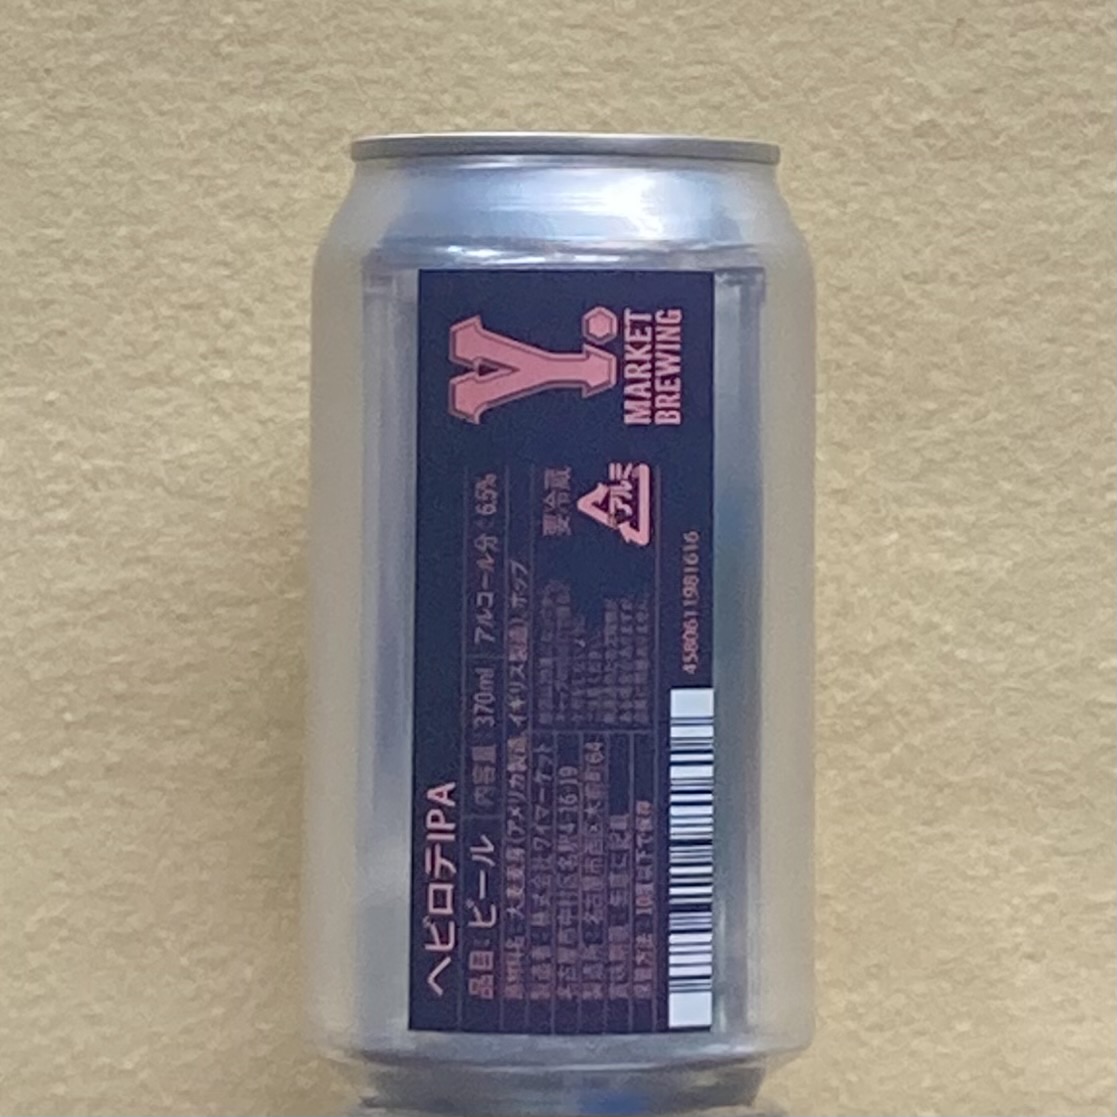 ヘビロテIPA 370ml缶